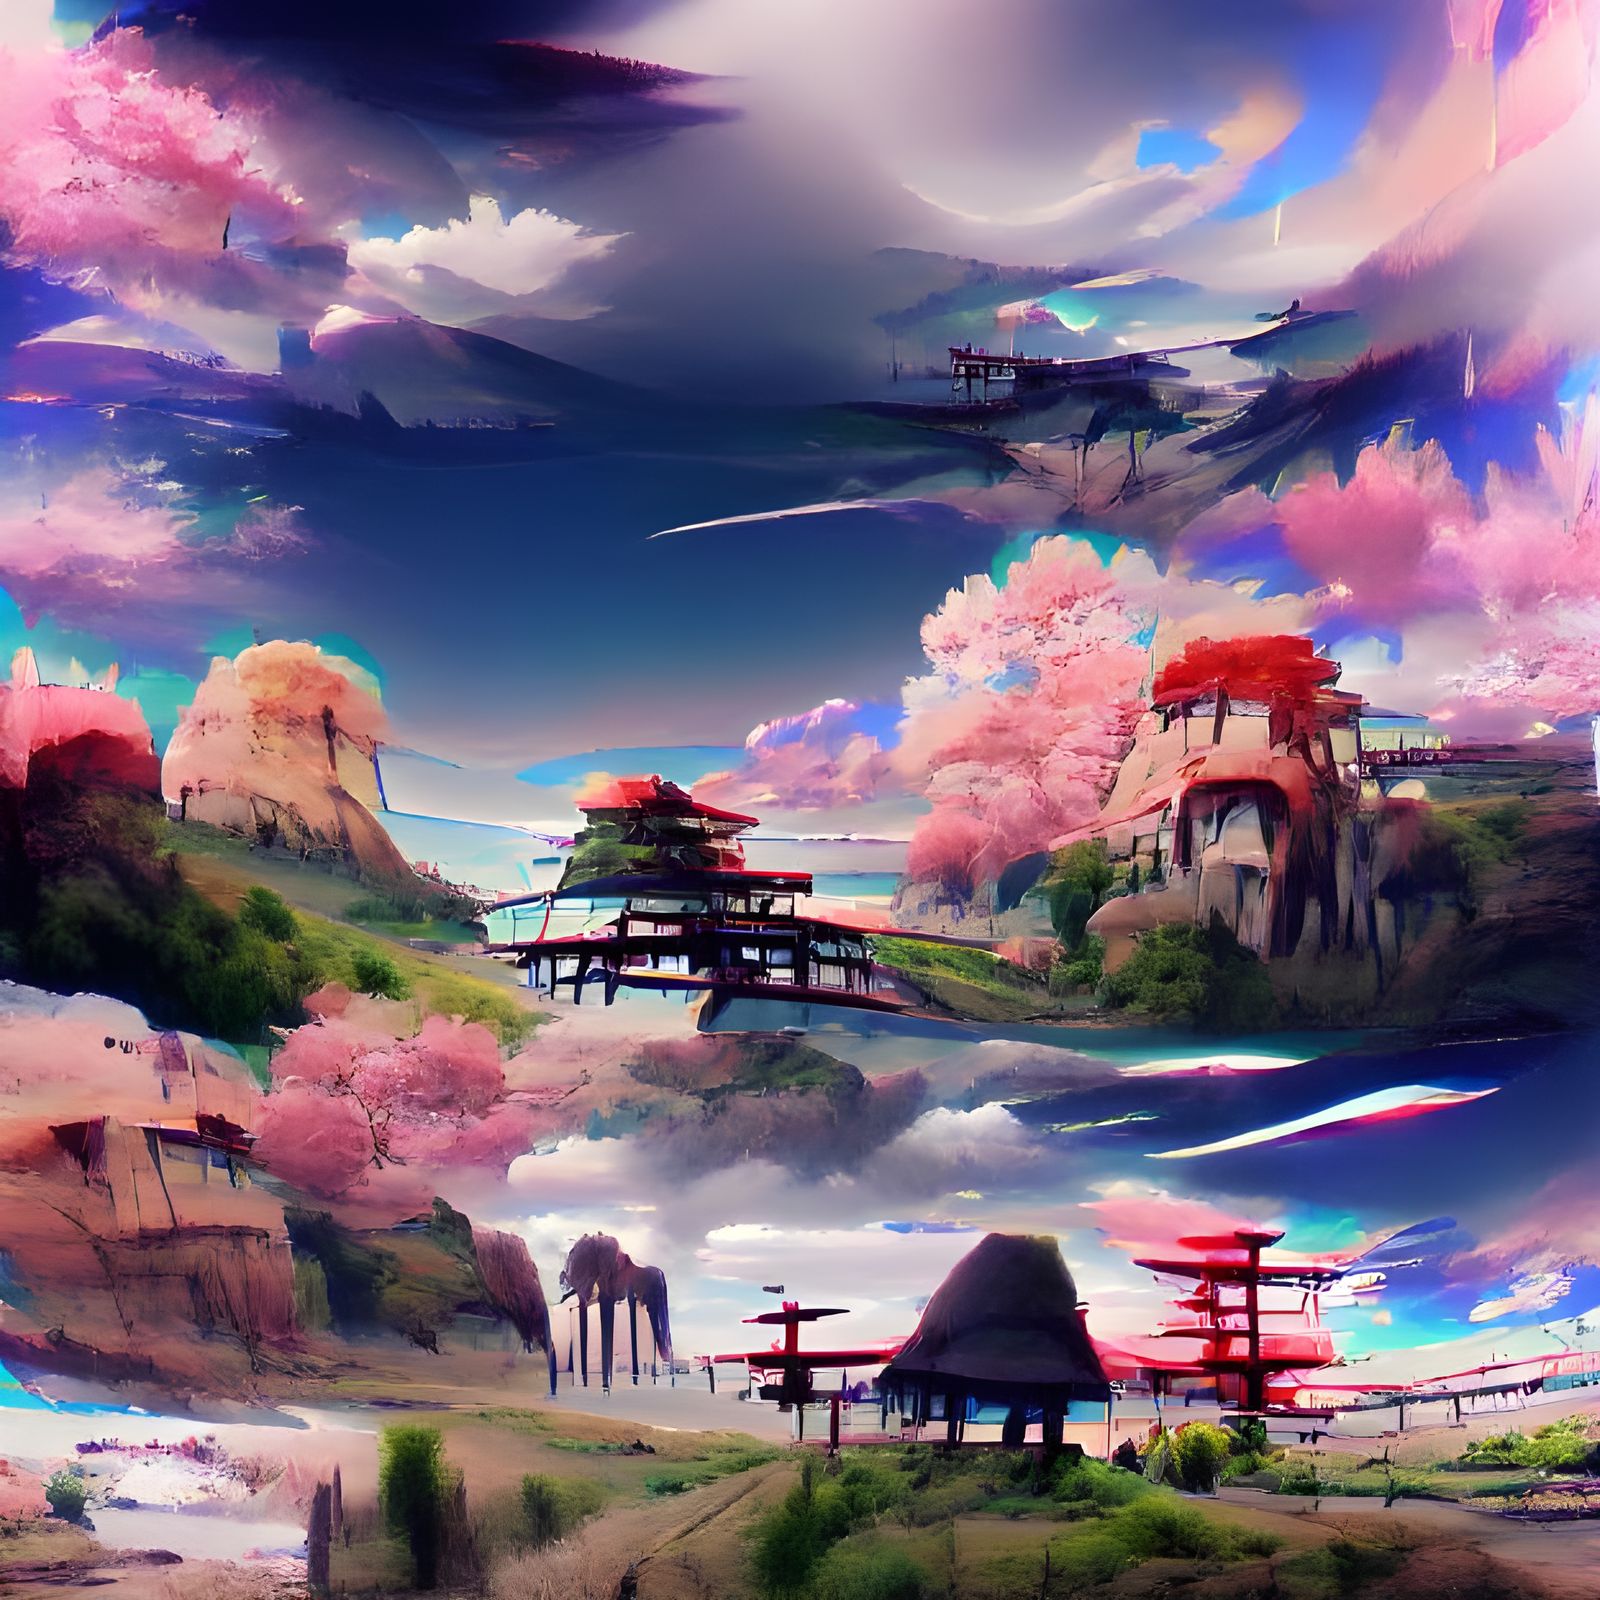 Tham quan những bức tranh anime cực kỳ ấn tượng với những cảnh quan đa dạng và phong phú. Những bức tranh đặc sắc này sẽ khiến bạn say mê và chìm đắm trong thế giới anime đầy pha lê và cuốn hút.